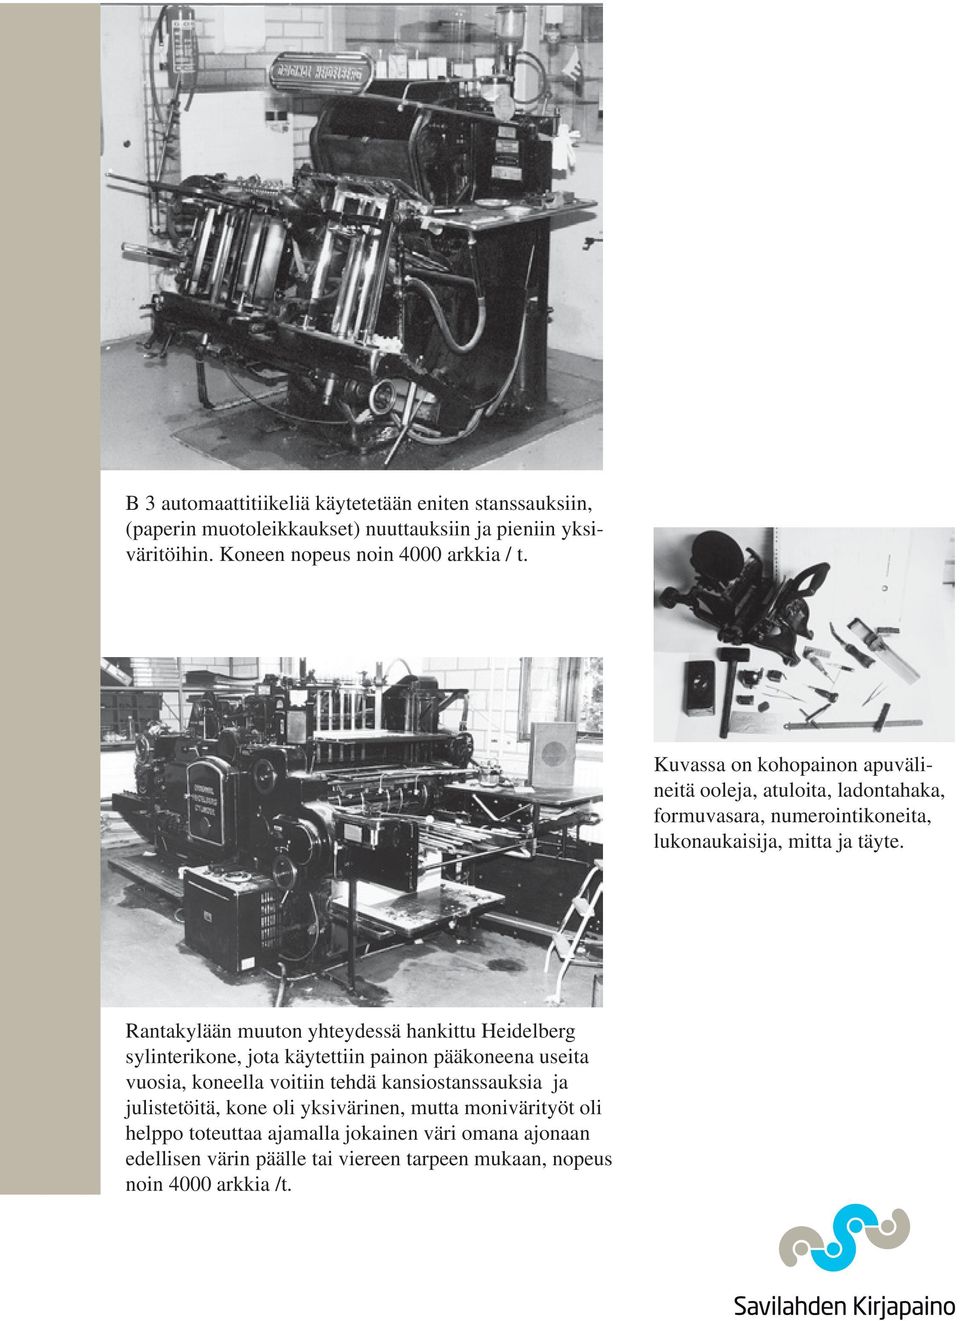 Rantakylään muuton yhteydessä hankittu Heidelberg sylinterikone, jota käytettiin painon pääkoneena useita vuosia, koneella voitiin tehdä kansio stanssauksia ja